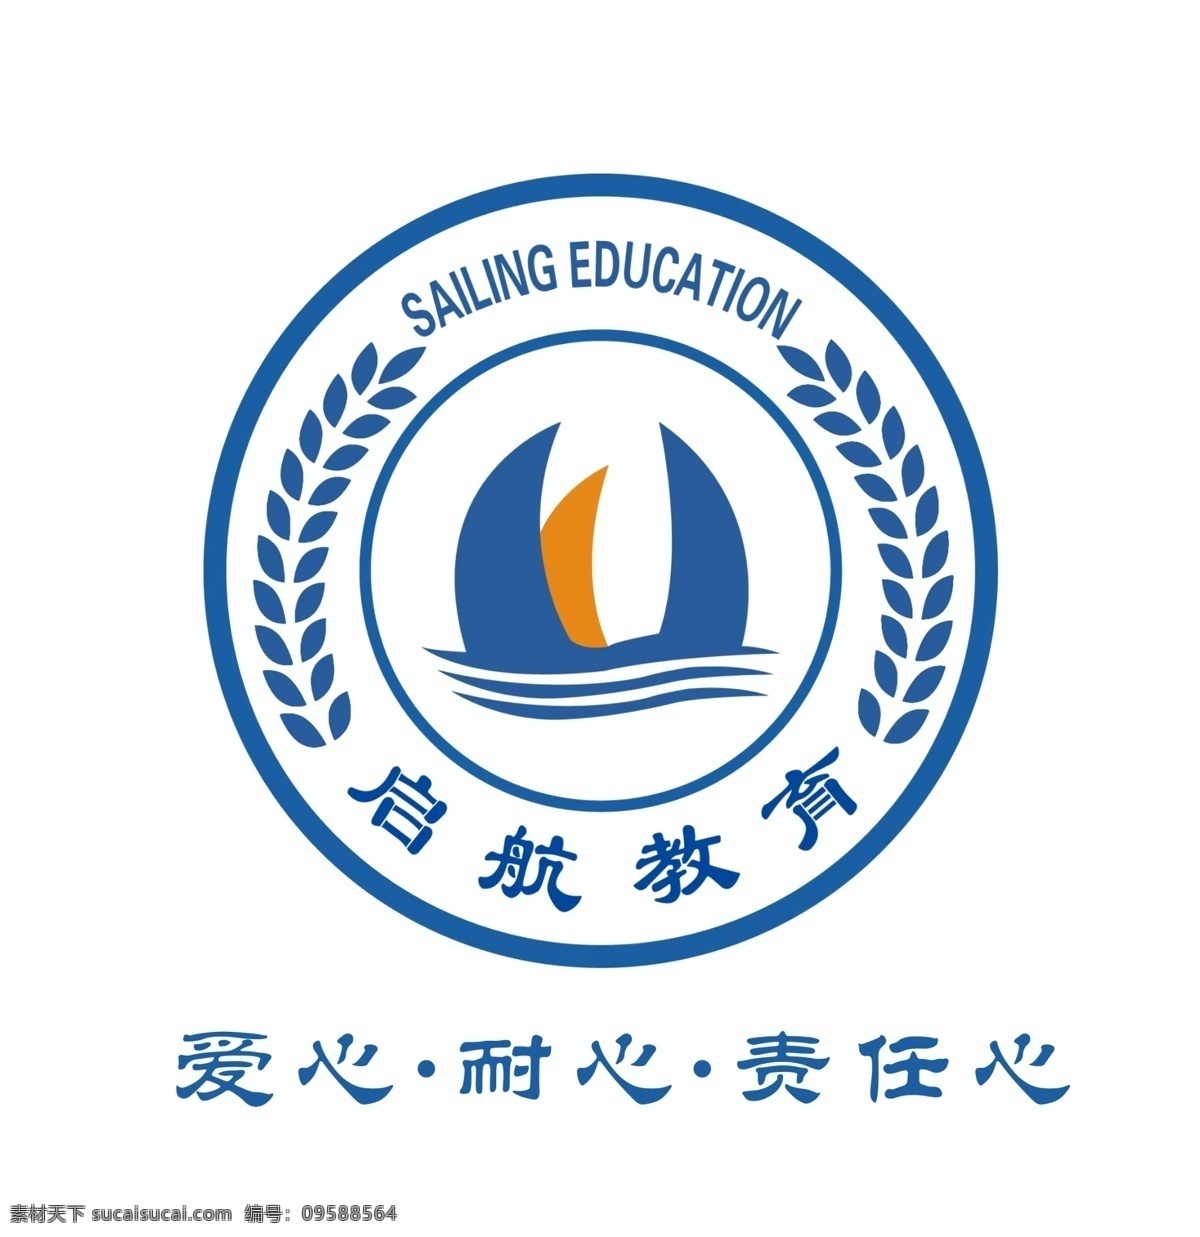 启航教育 logo 背景 蓝色 橙色